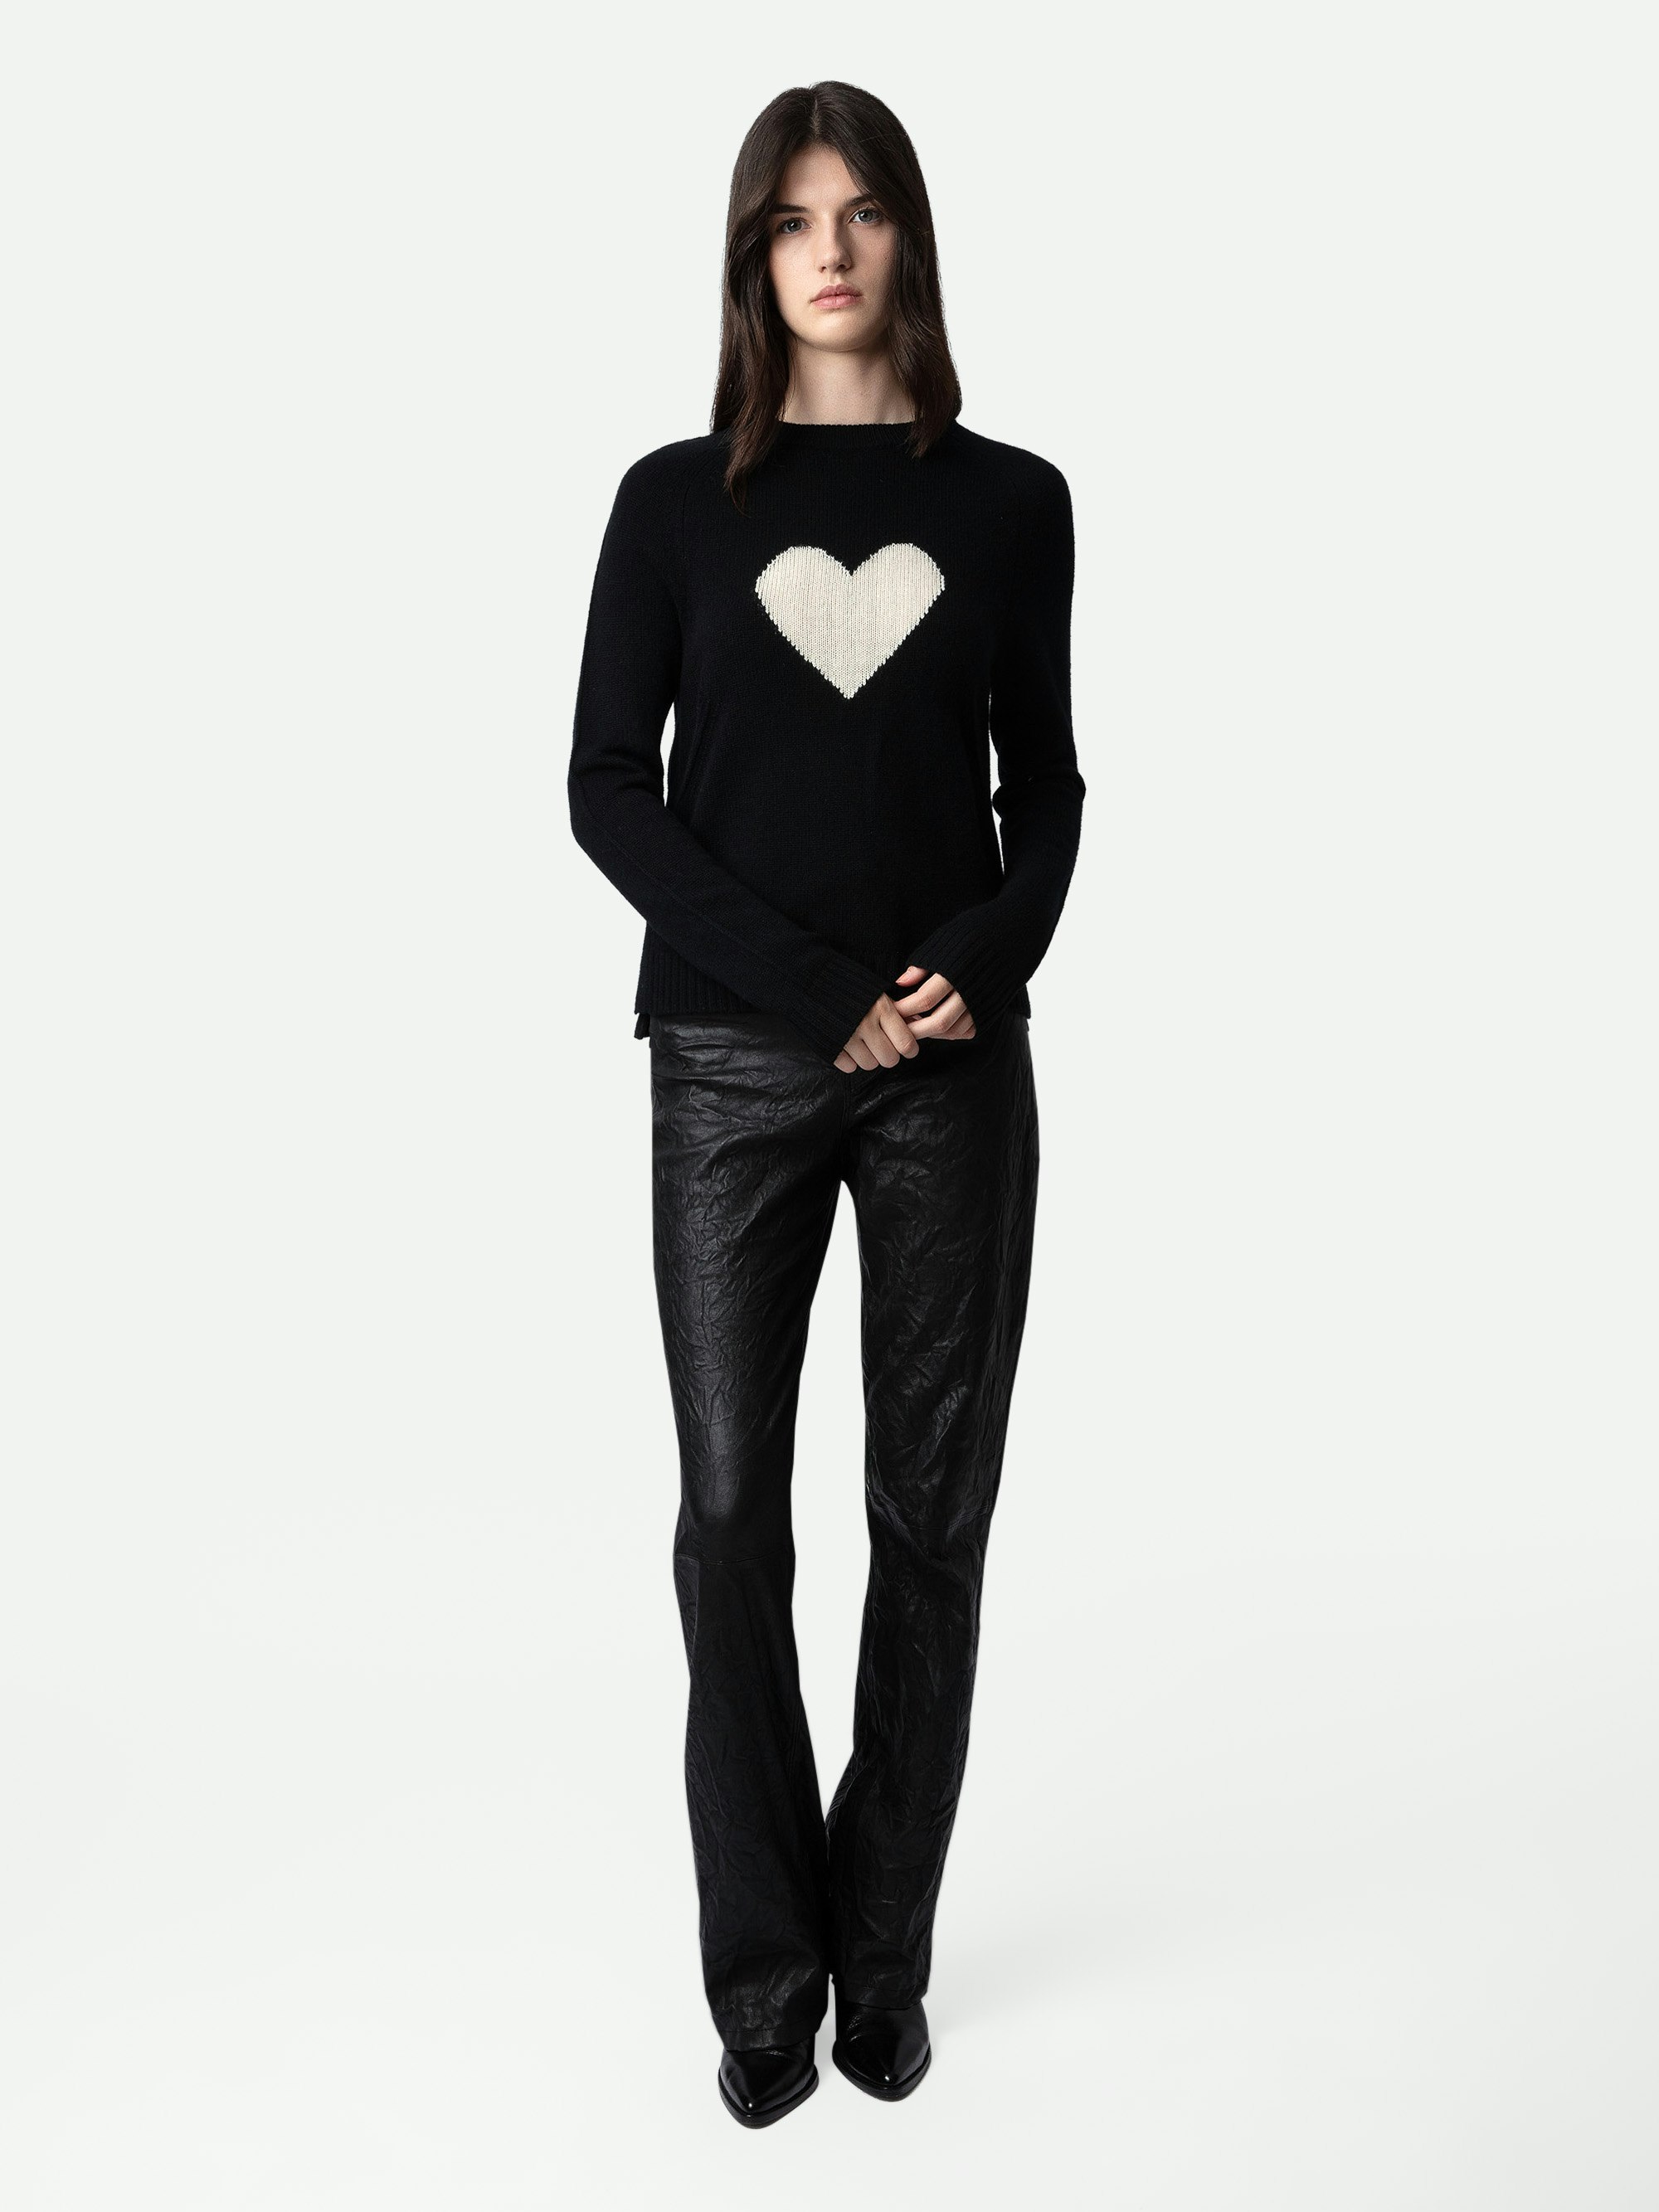 Jersey de cachemira Lili - Jersey negro de 100% cachemire con corazón en la parte delantera.